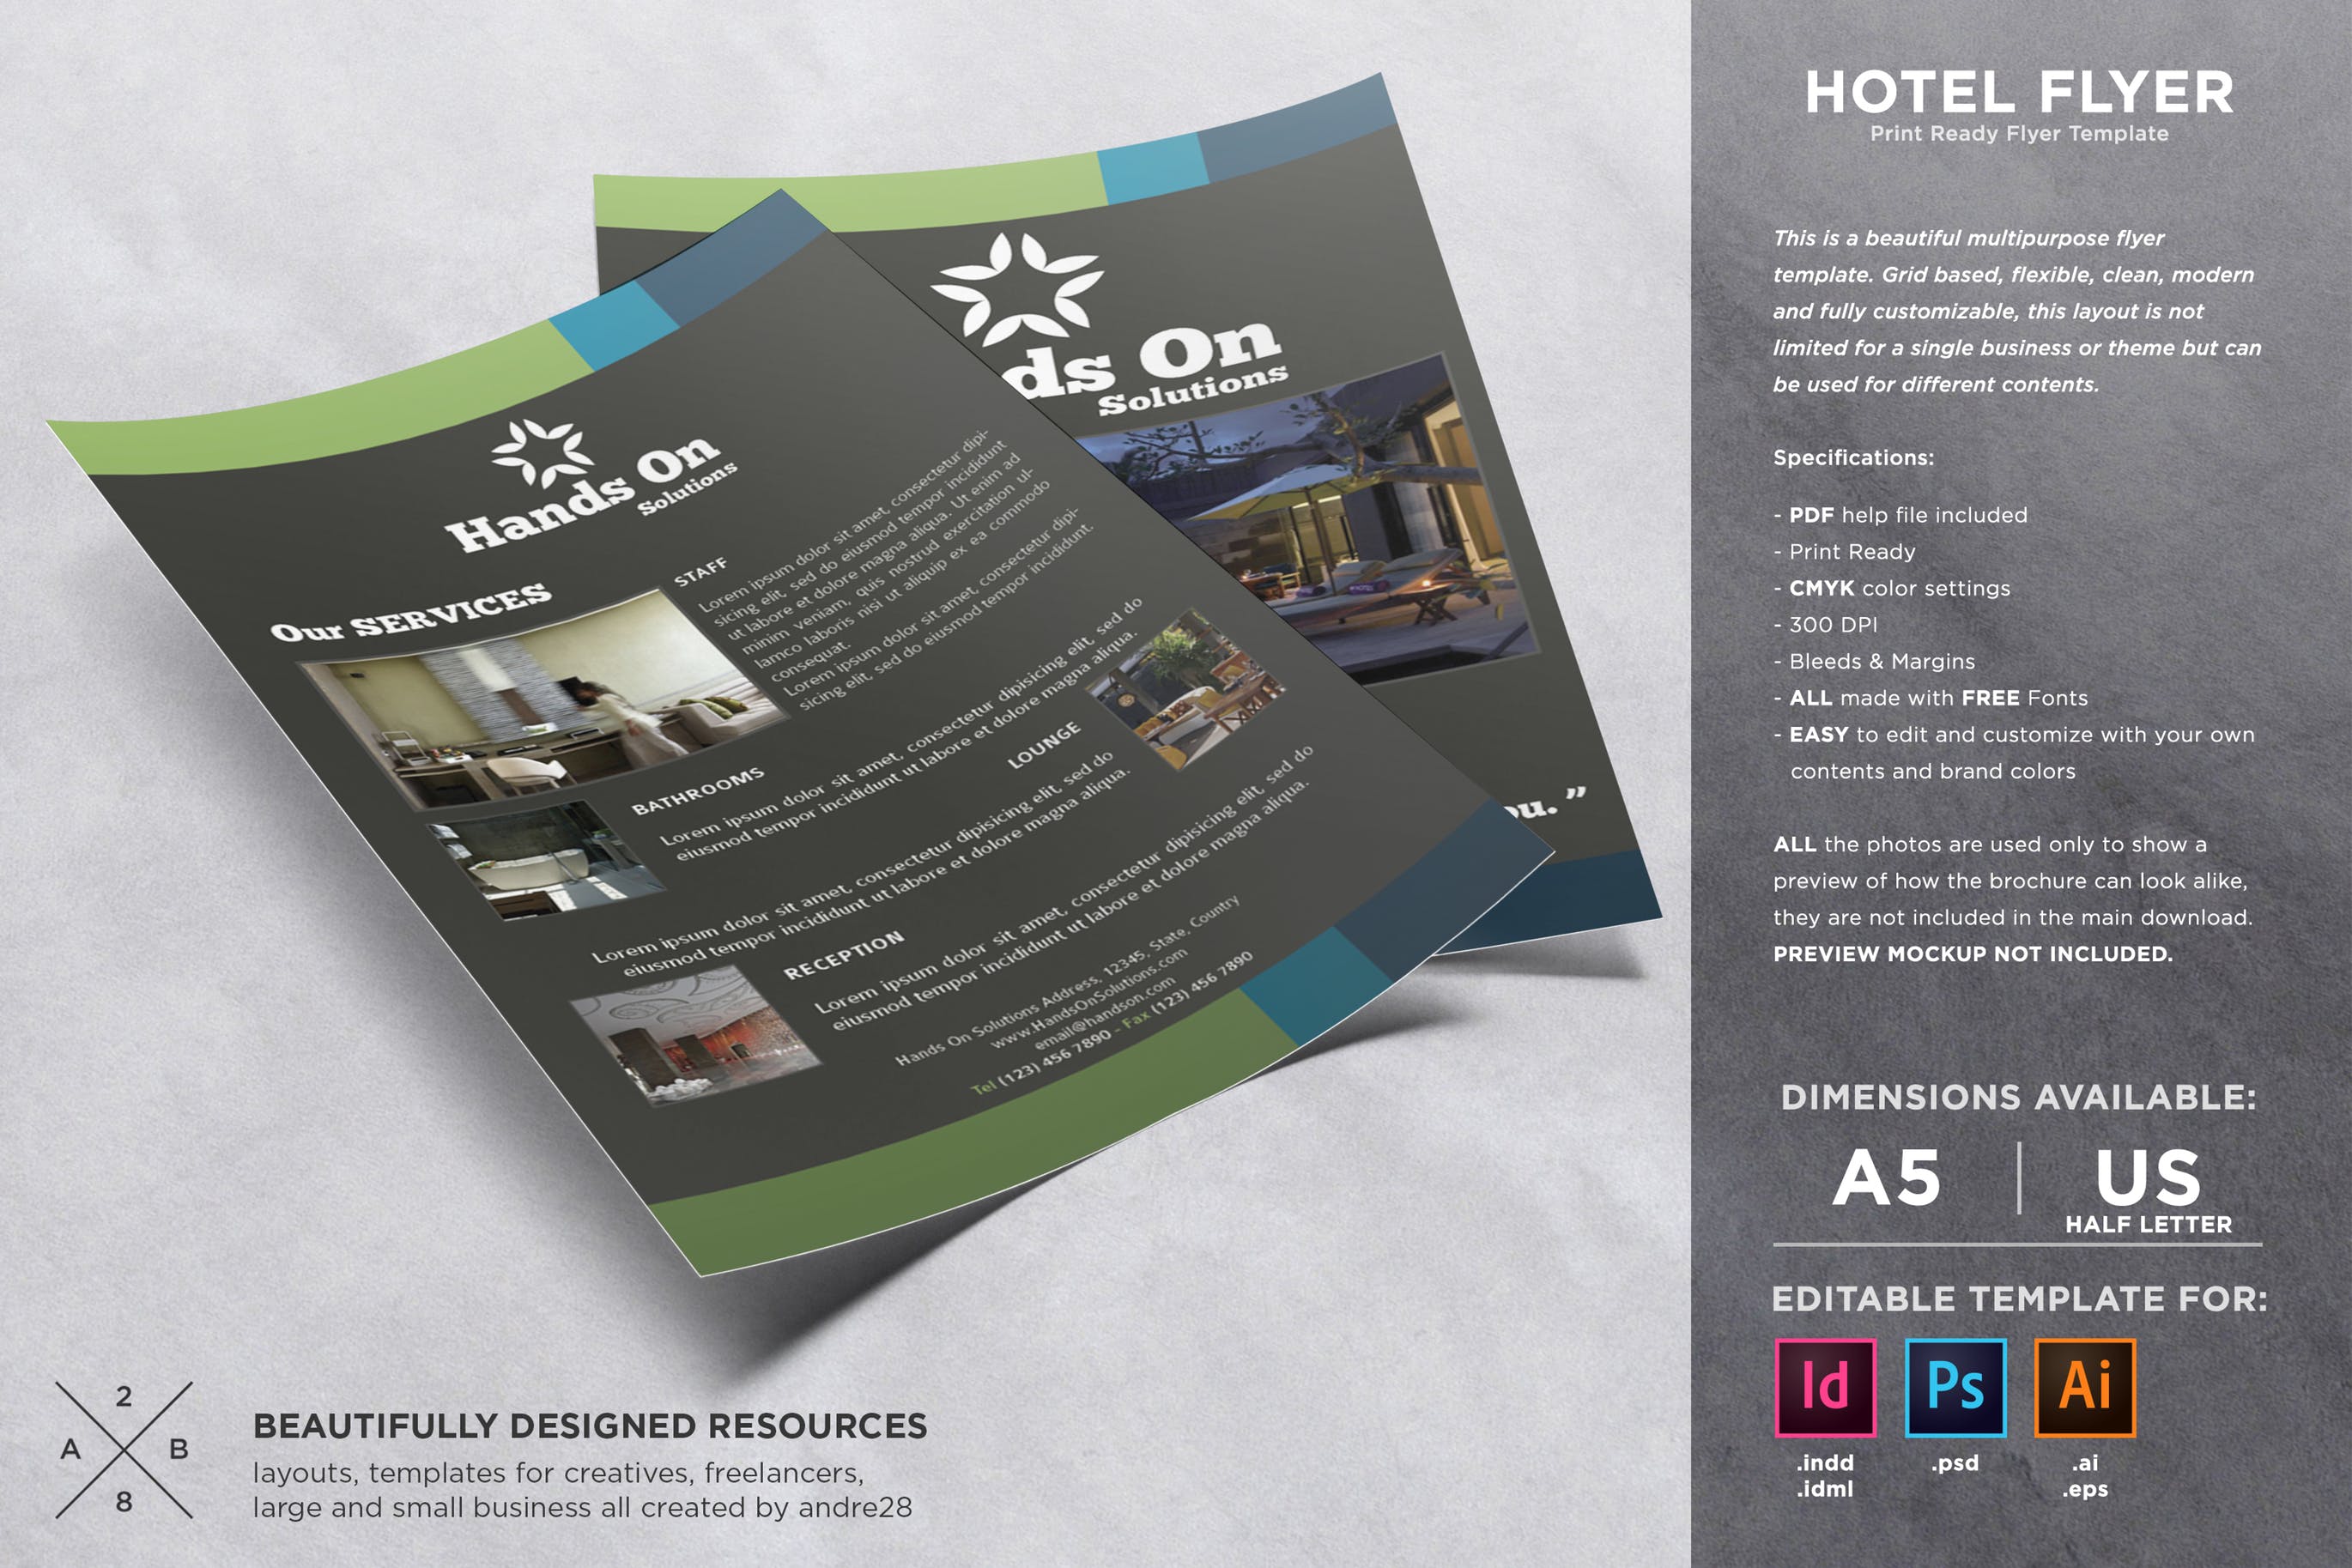 酒店/宾馆/民宿营销宣传单设计模板 Hotel Flyer Template插图